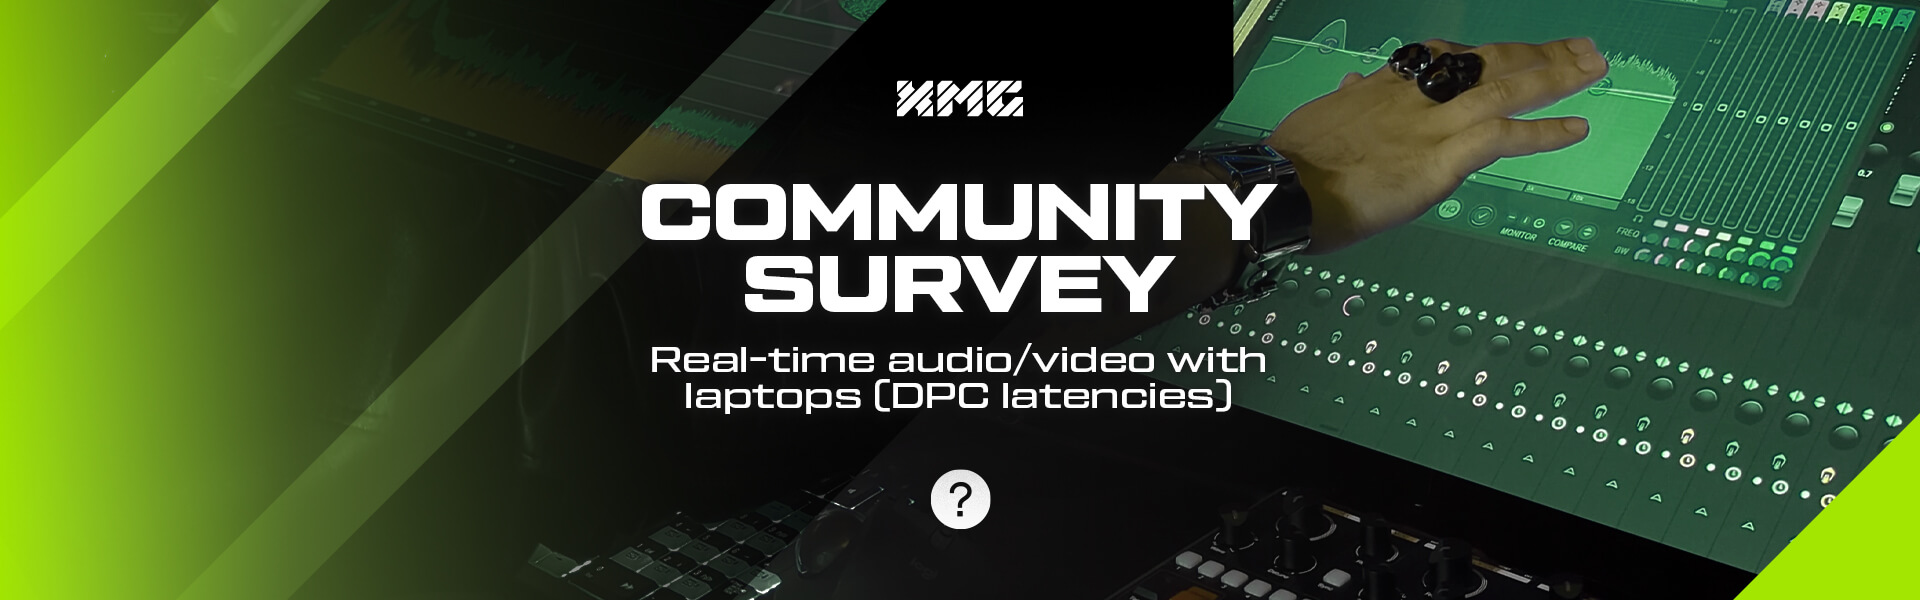 XMG community survey audio laptops dpc latencies